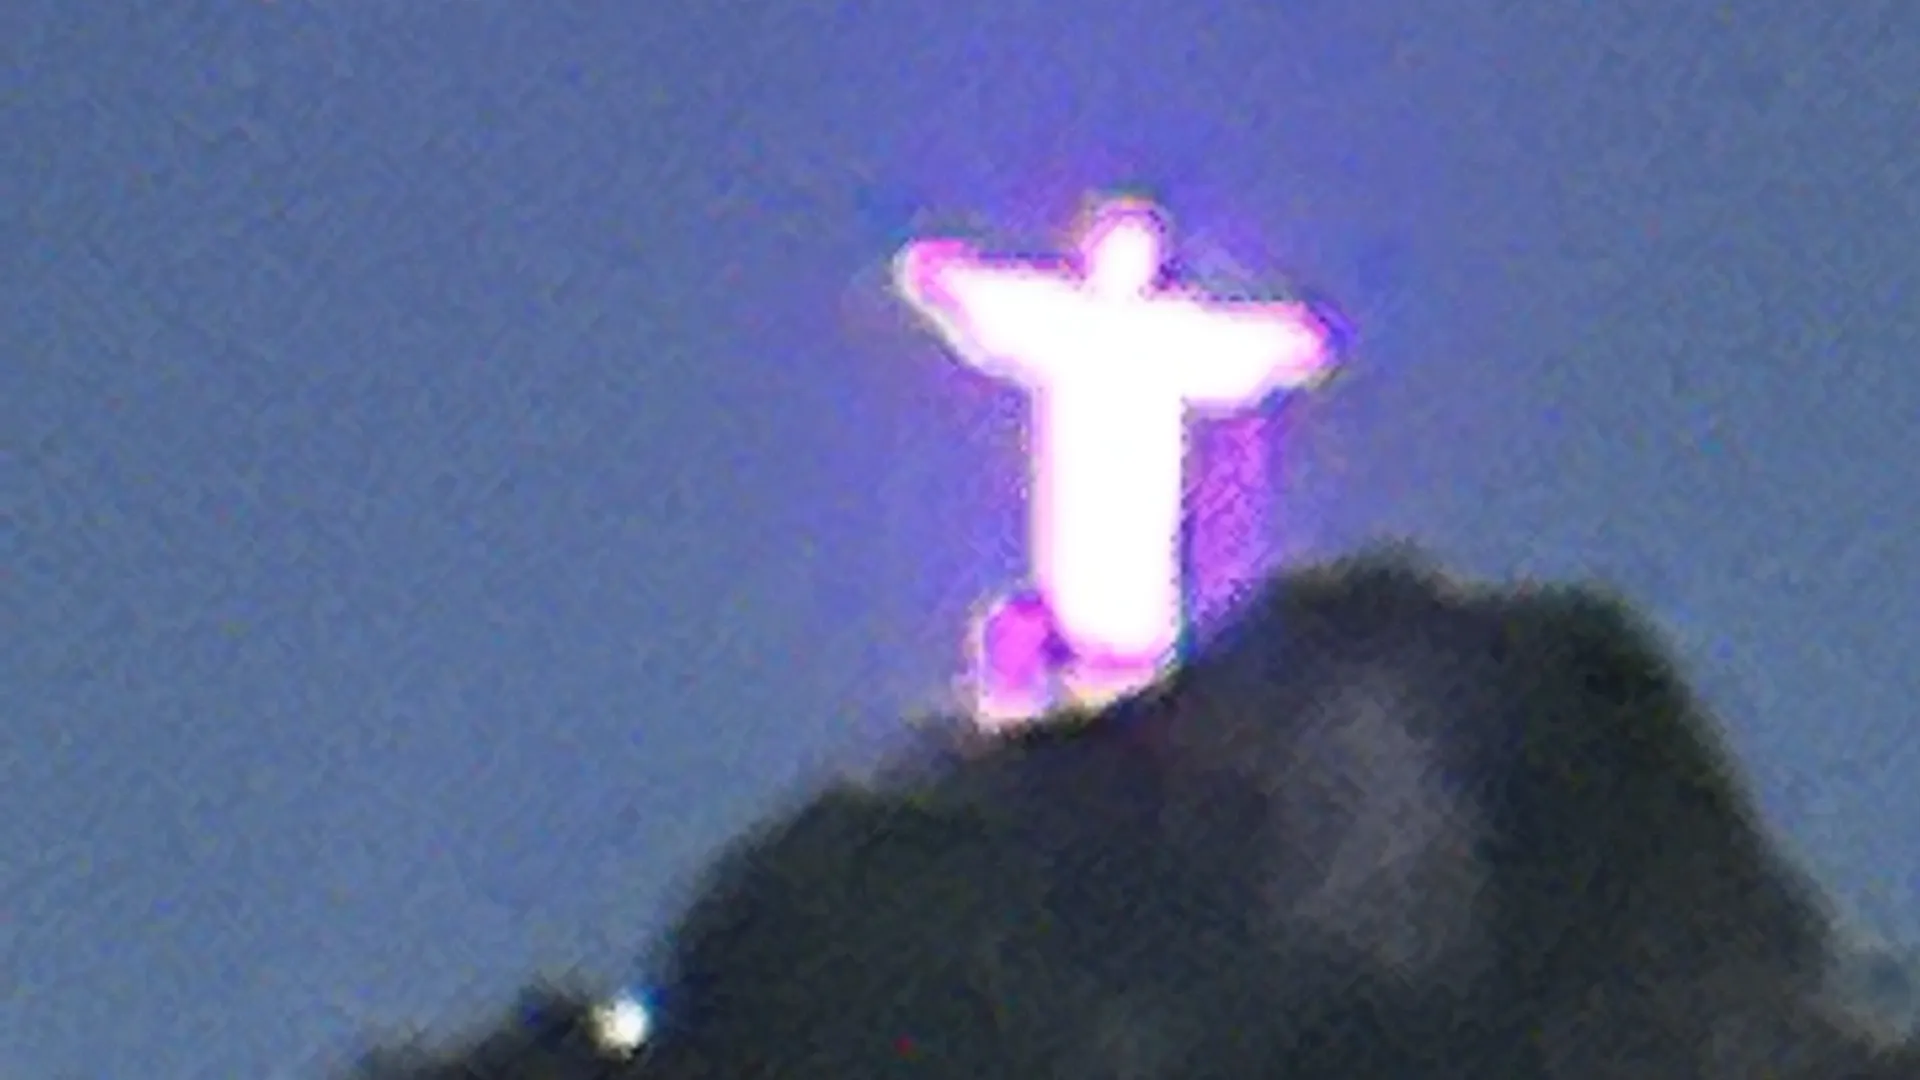 Fotos do Cristo Redendor feitas pelo iPhone 14 Pro Max sem zoom e com aumento progressivo do zoom (Fotos: Nicollas Bento)